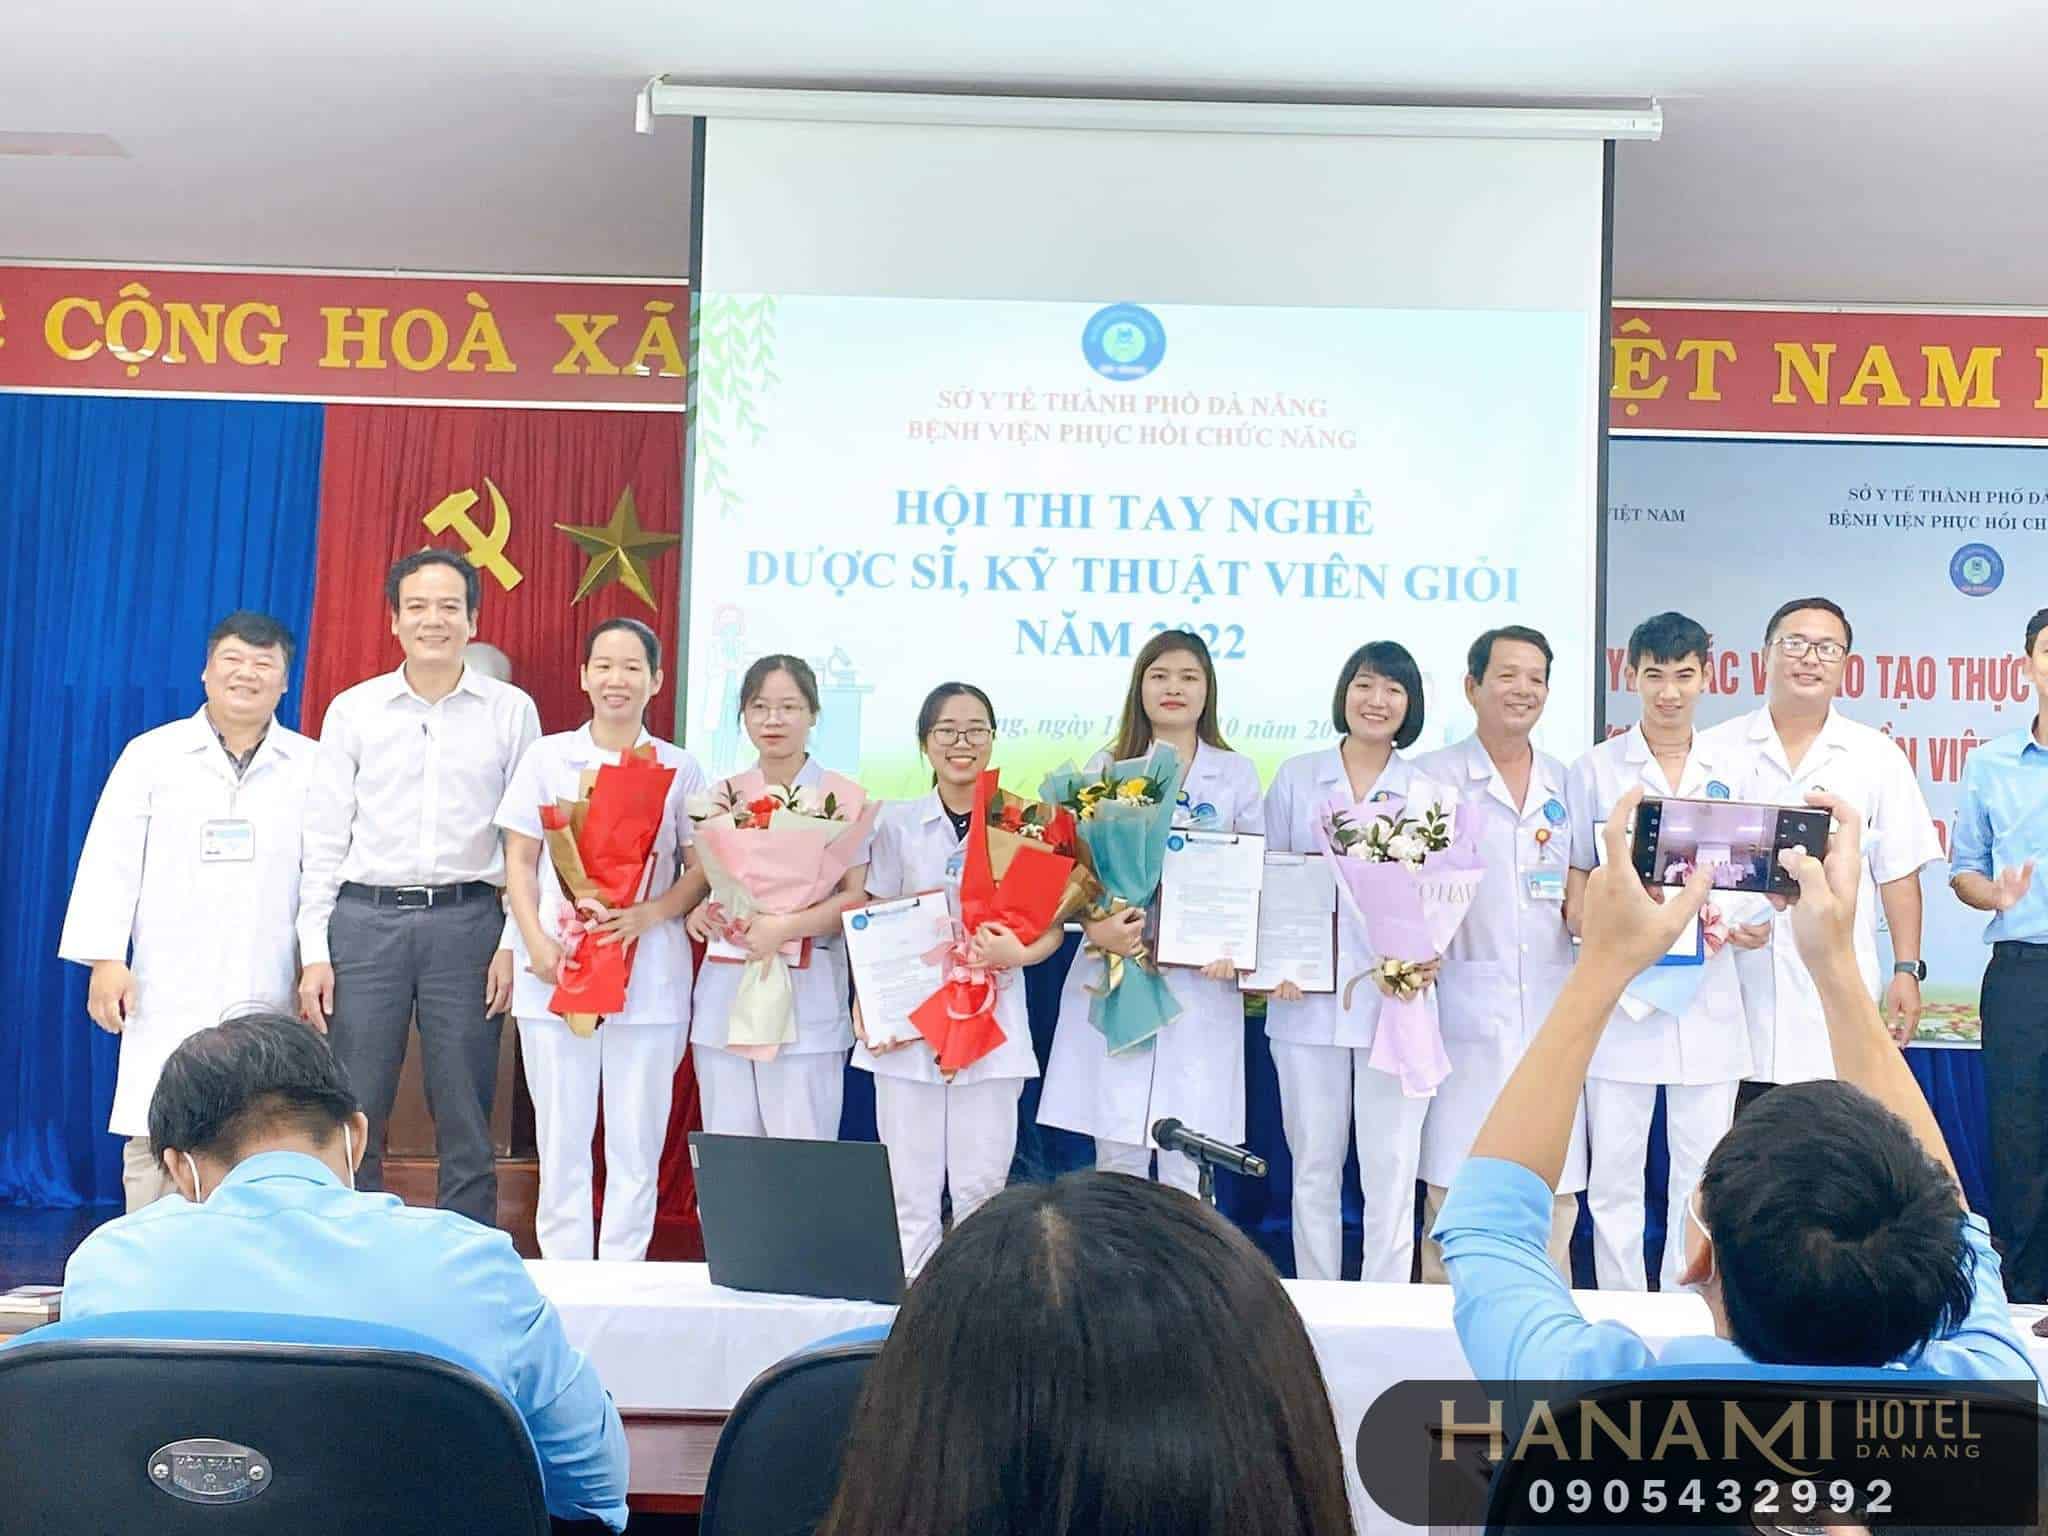 Đội ngũ dược sĩ cửa hàng Sức Khỏe Hương Việt Nam